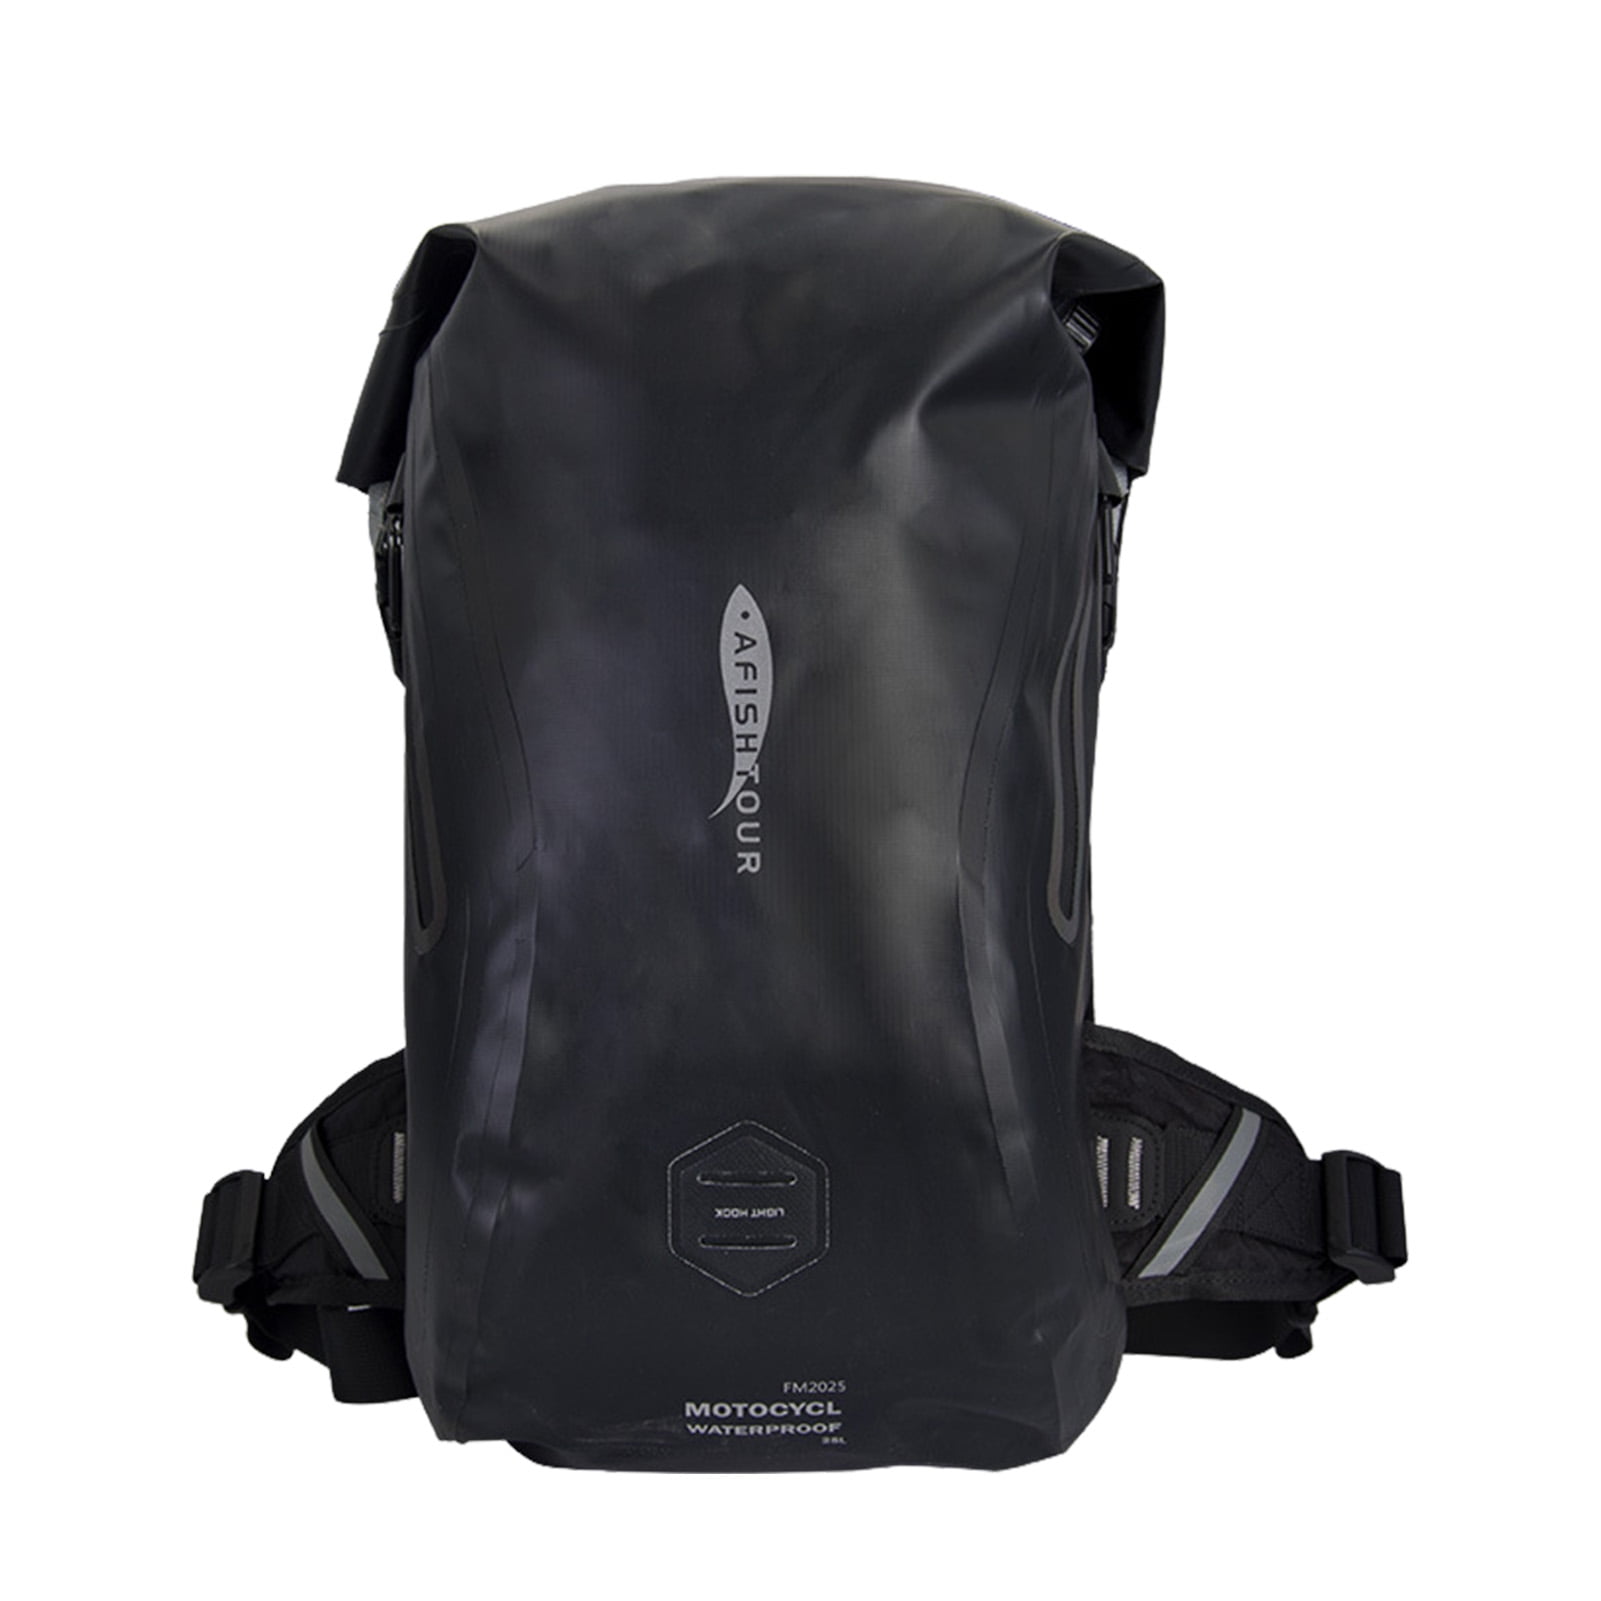 Details about   Women Ladies Backpack School Rucksack Travel Hiking Satchel Large Shoulder Bag 